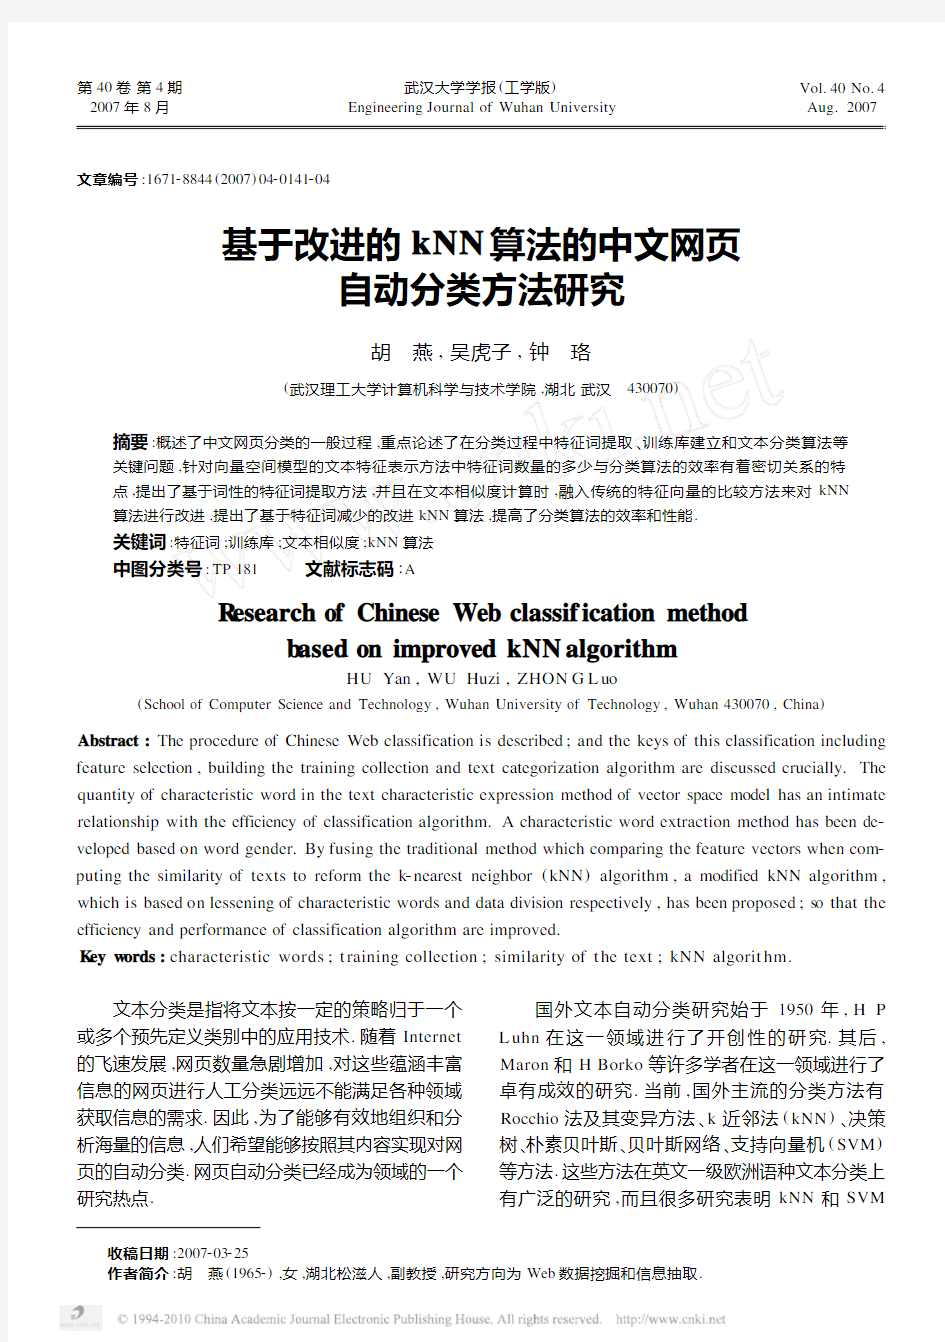 基于改进的kNN算法的中文网页自动分类方法研究